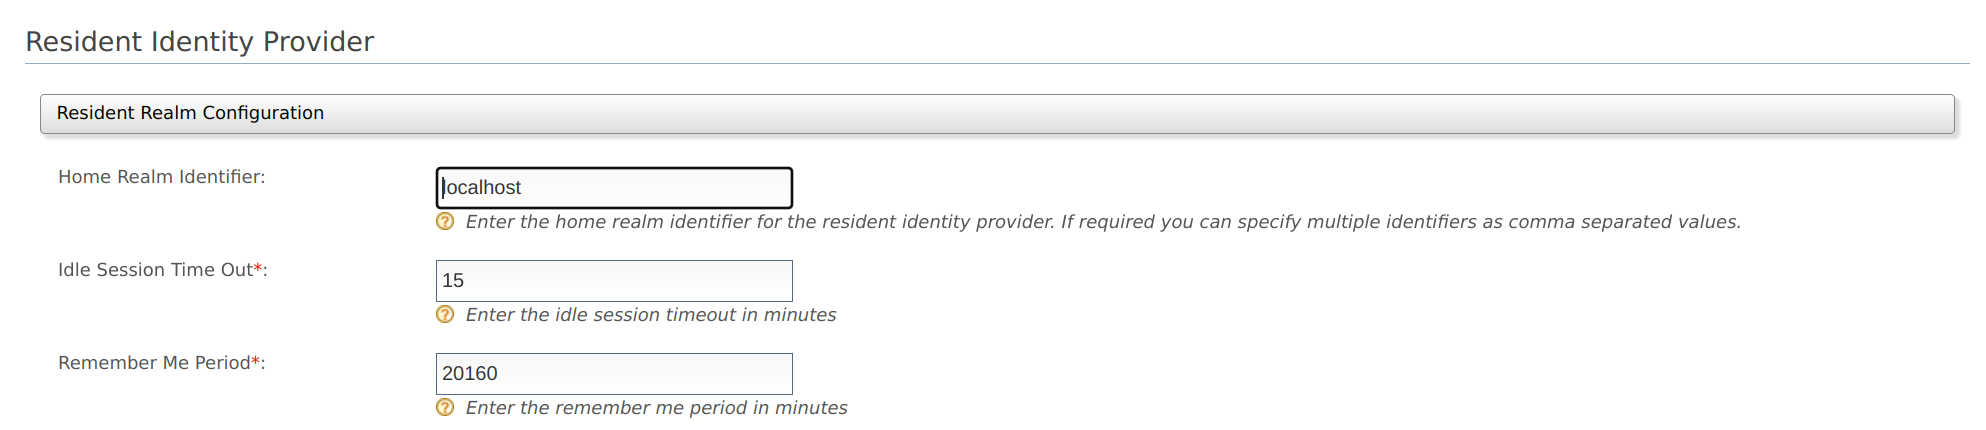 resident-identity-provider